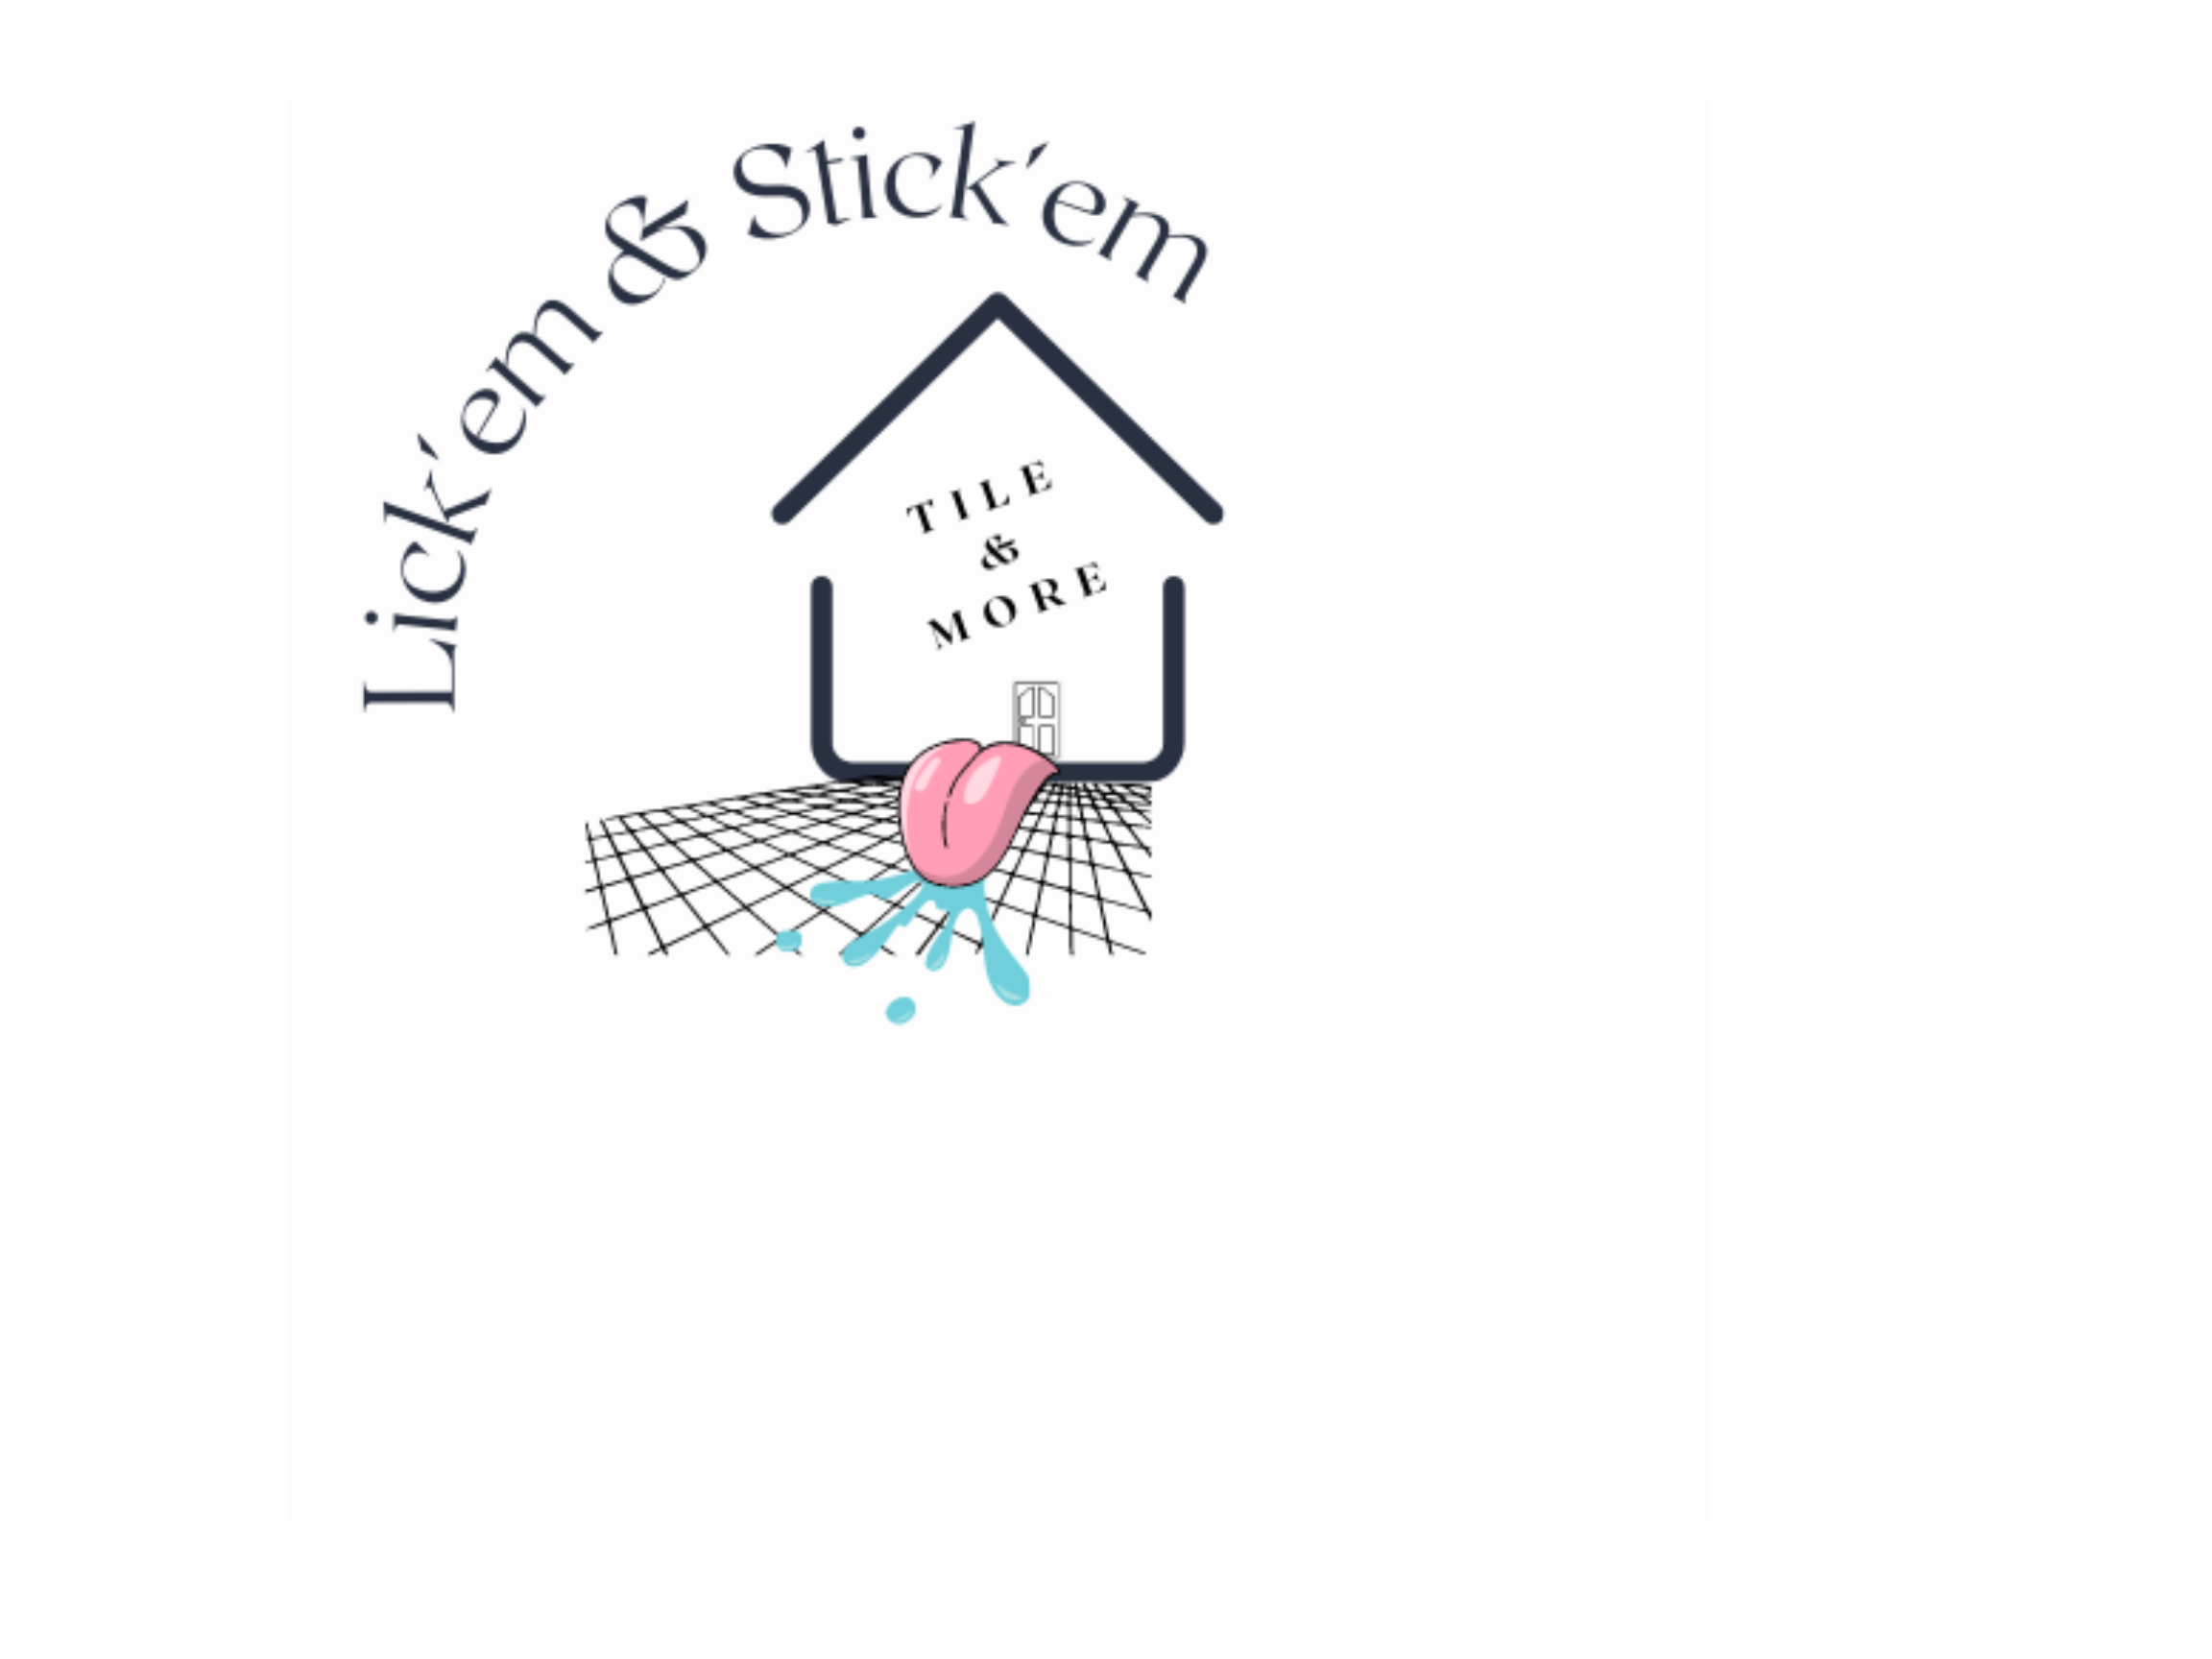 Lick'em & Stick'em Tile & More LLC Logo